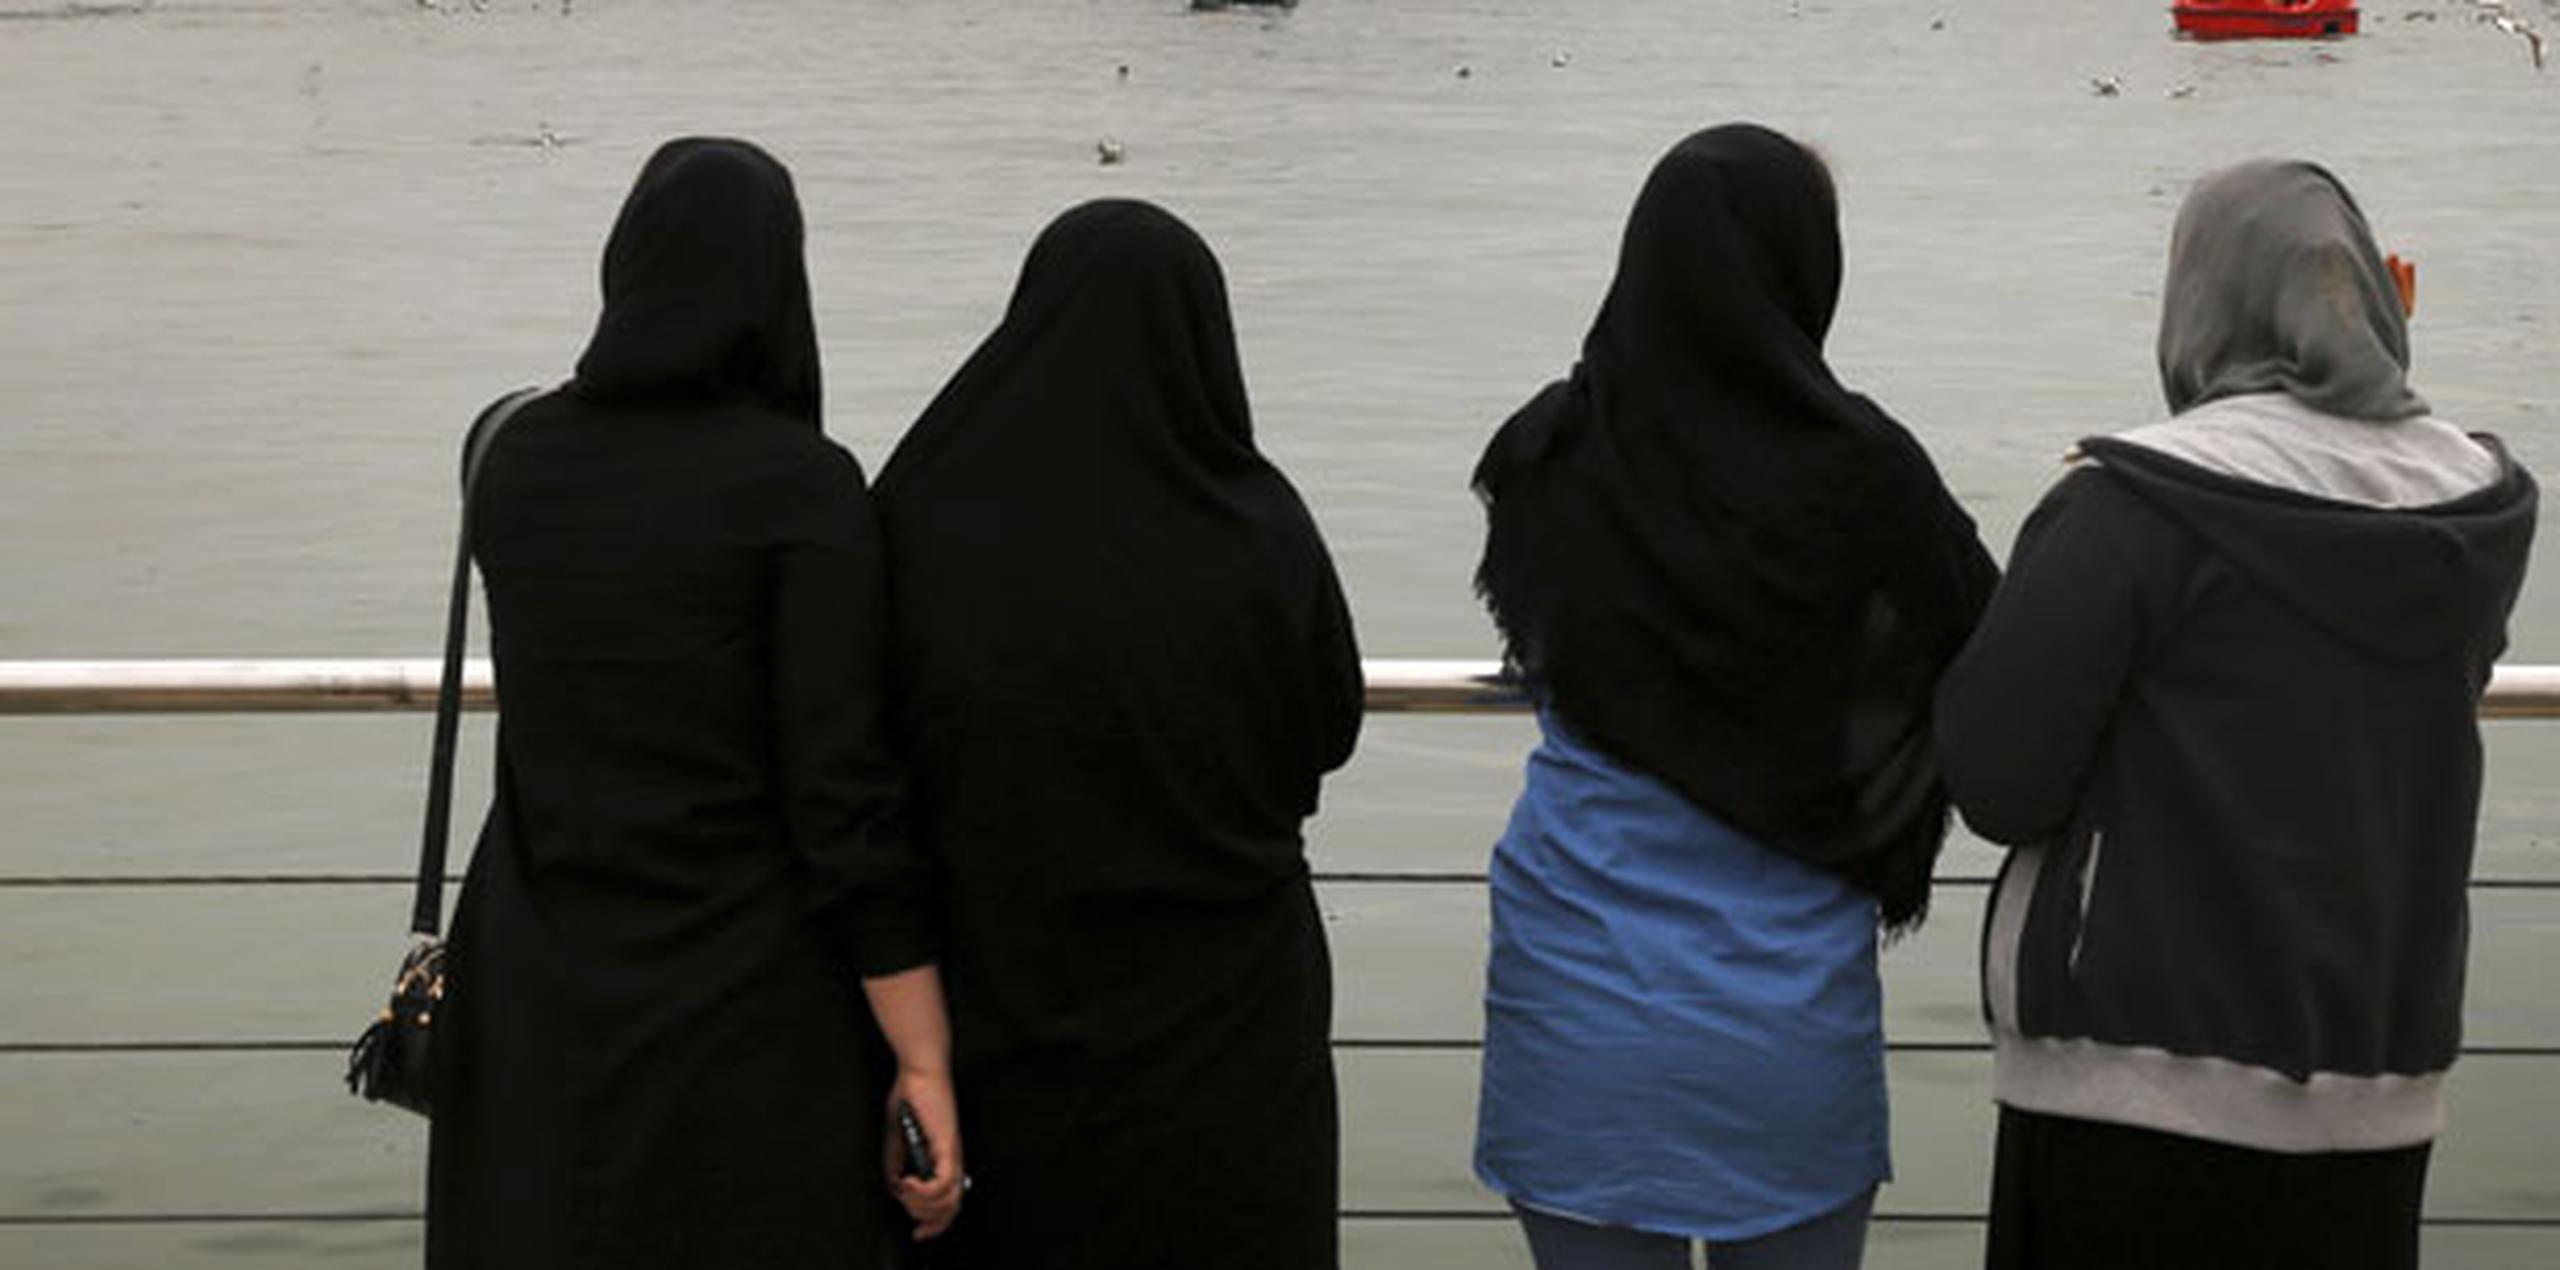 La acusada se quitó el pañuelo en la calle Enghelab de Teherán para “alentar la corrupción mediante la eliminación del hijab en público”. (Archivo)